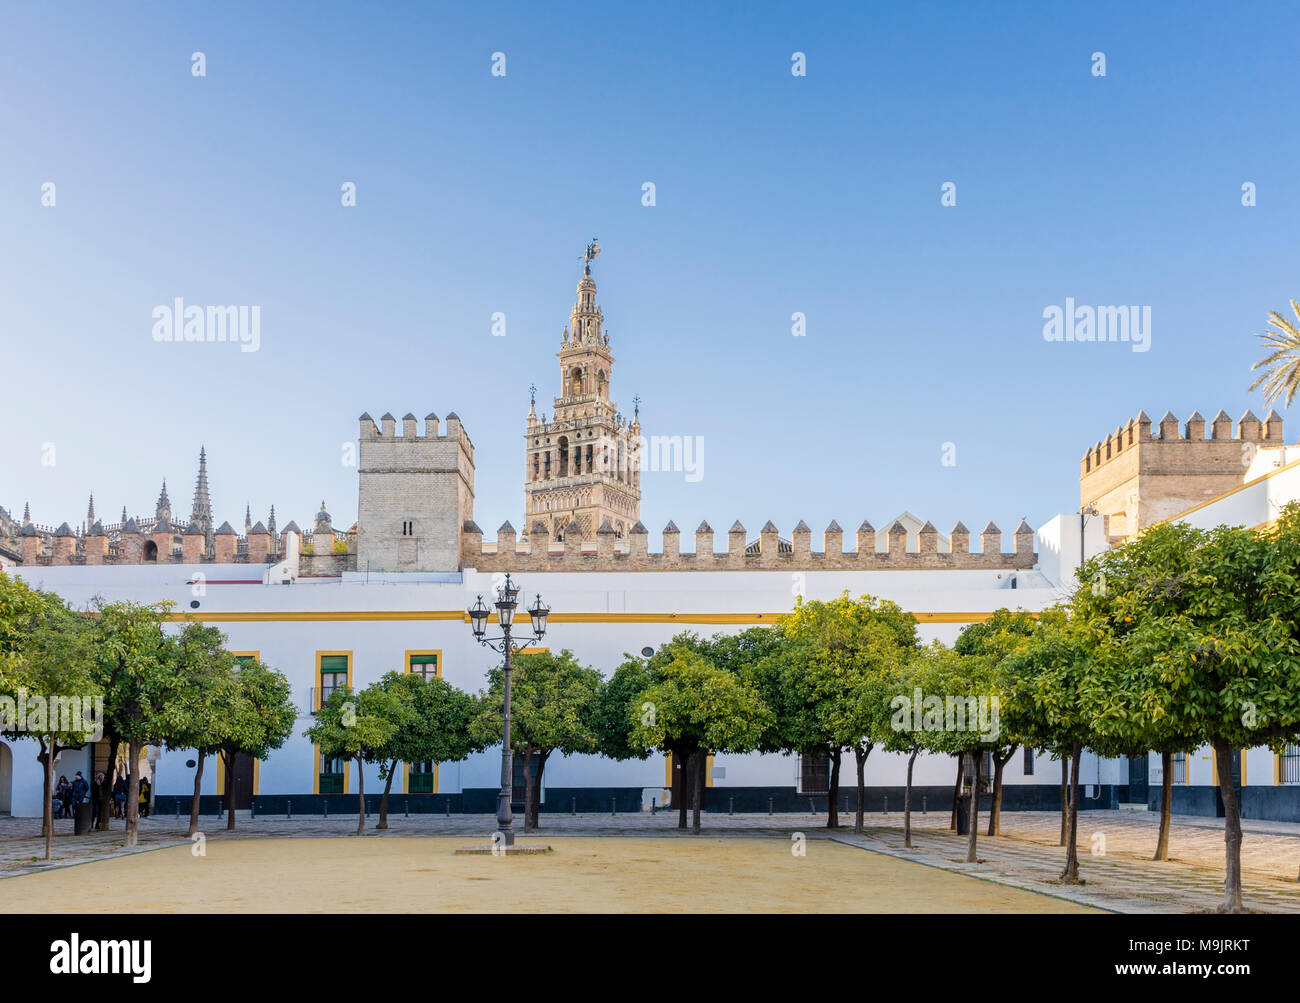 Patio de Banderas Plaza/Innenhof/Platz im historischen Stadtzentrum von Sevilla mit der Giralda Turm im Hintergrund 2018, Andalusien, Spanien Stockfoto